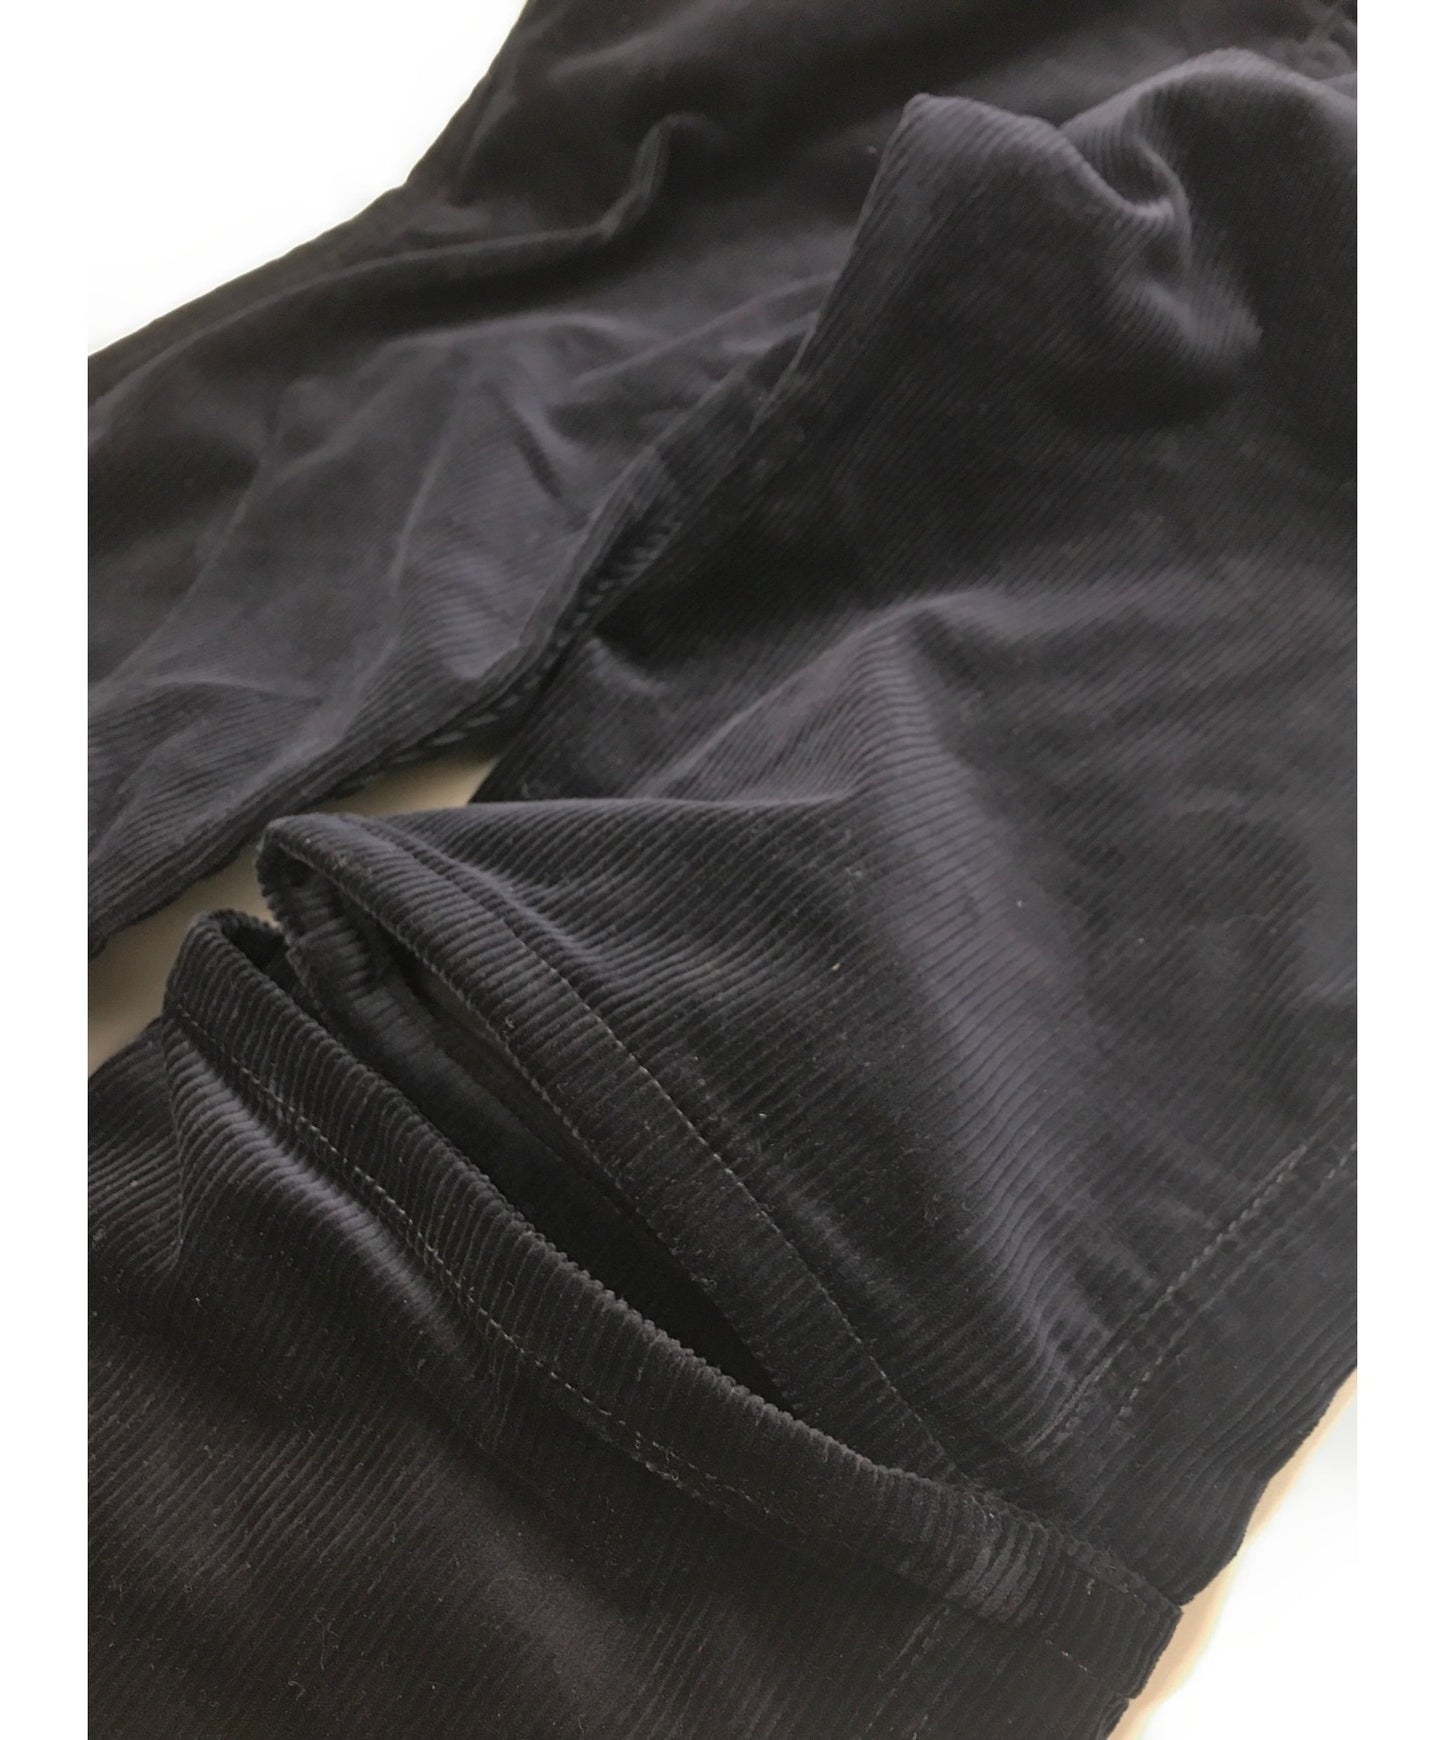 [Pre-owned] COMME des GARCONS SHIRT corduroy pants W27135